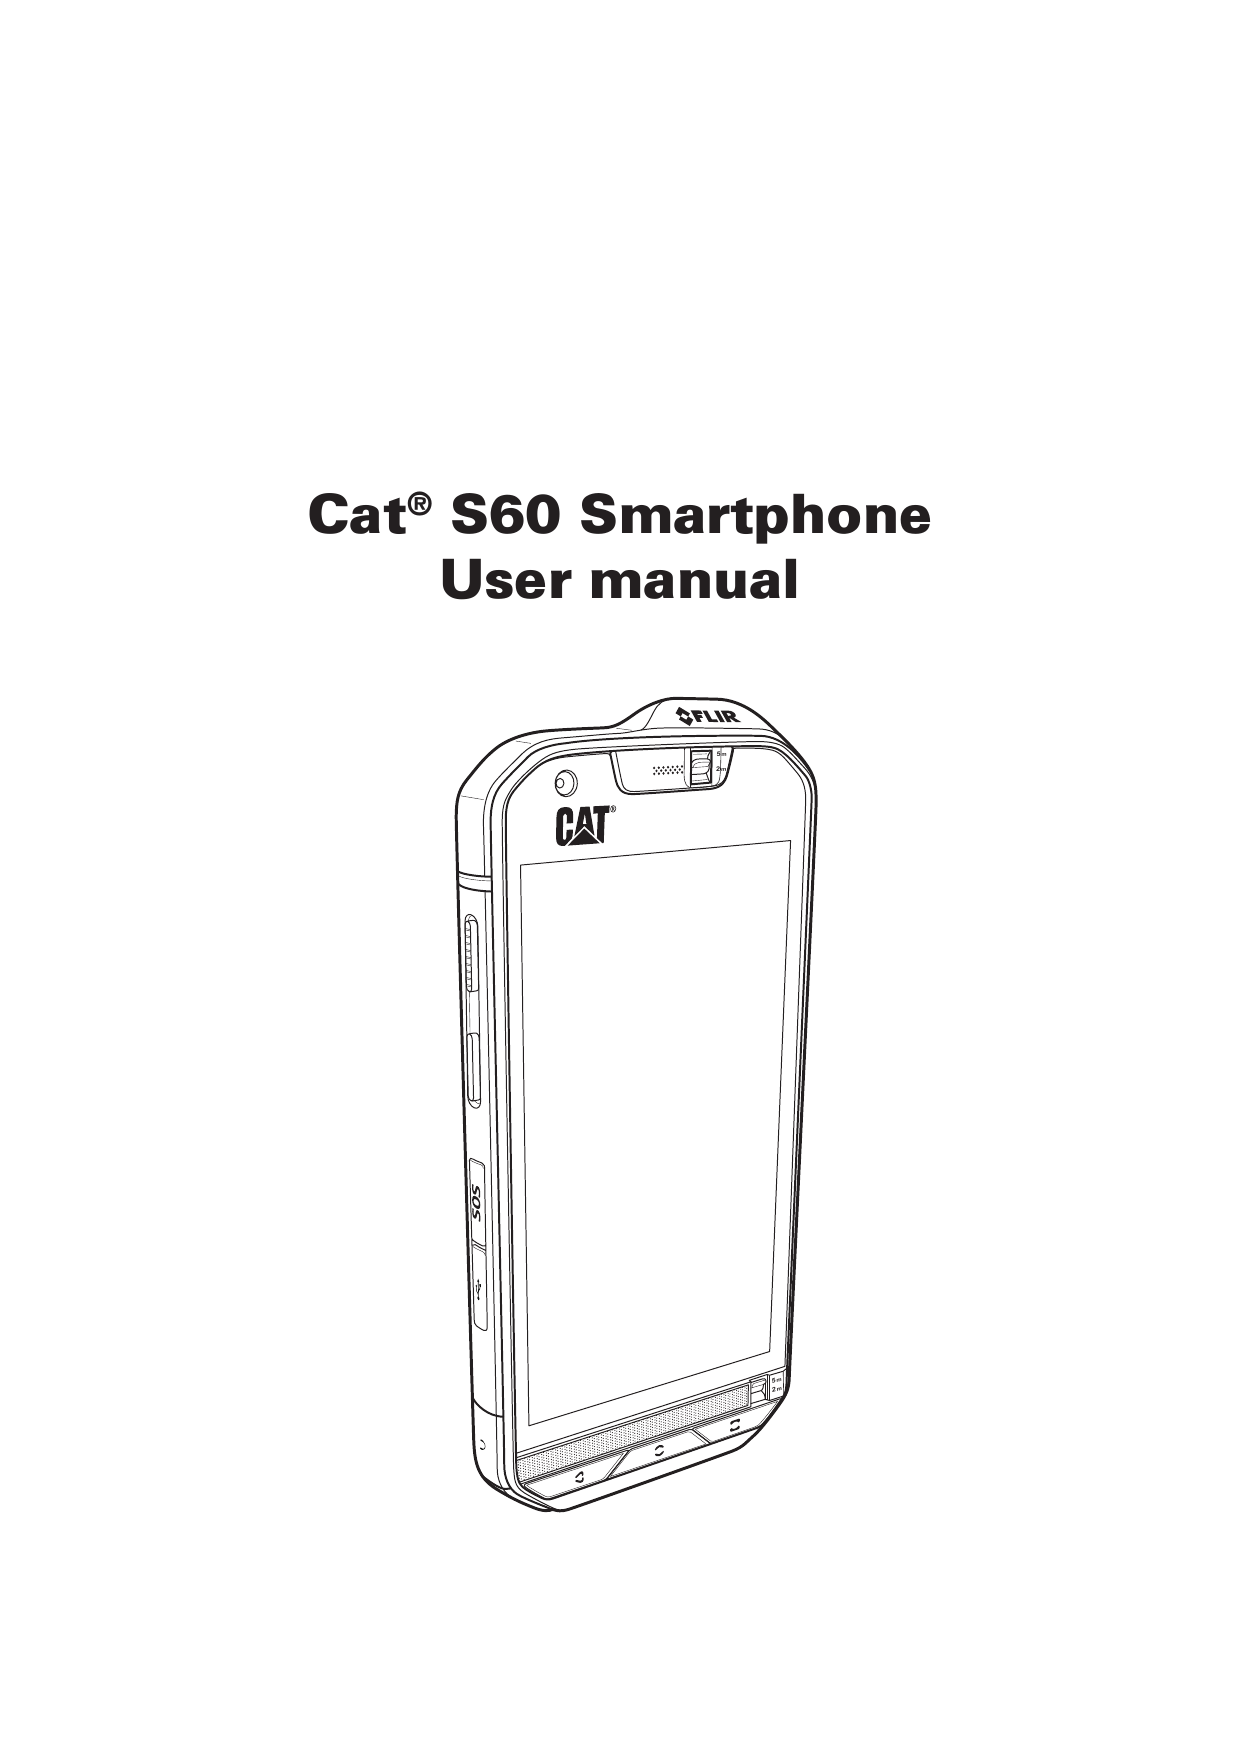 Cat® S60 SmartphoneUser manual5m2m5m2m